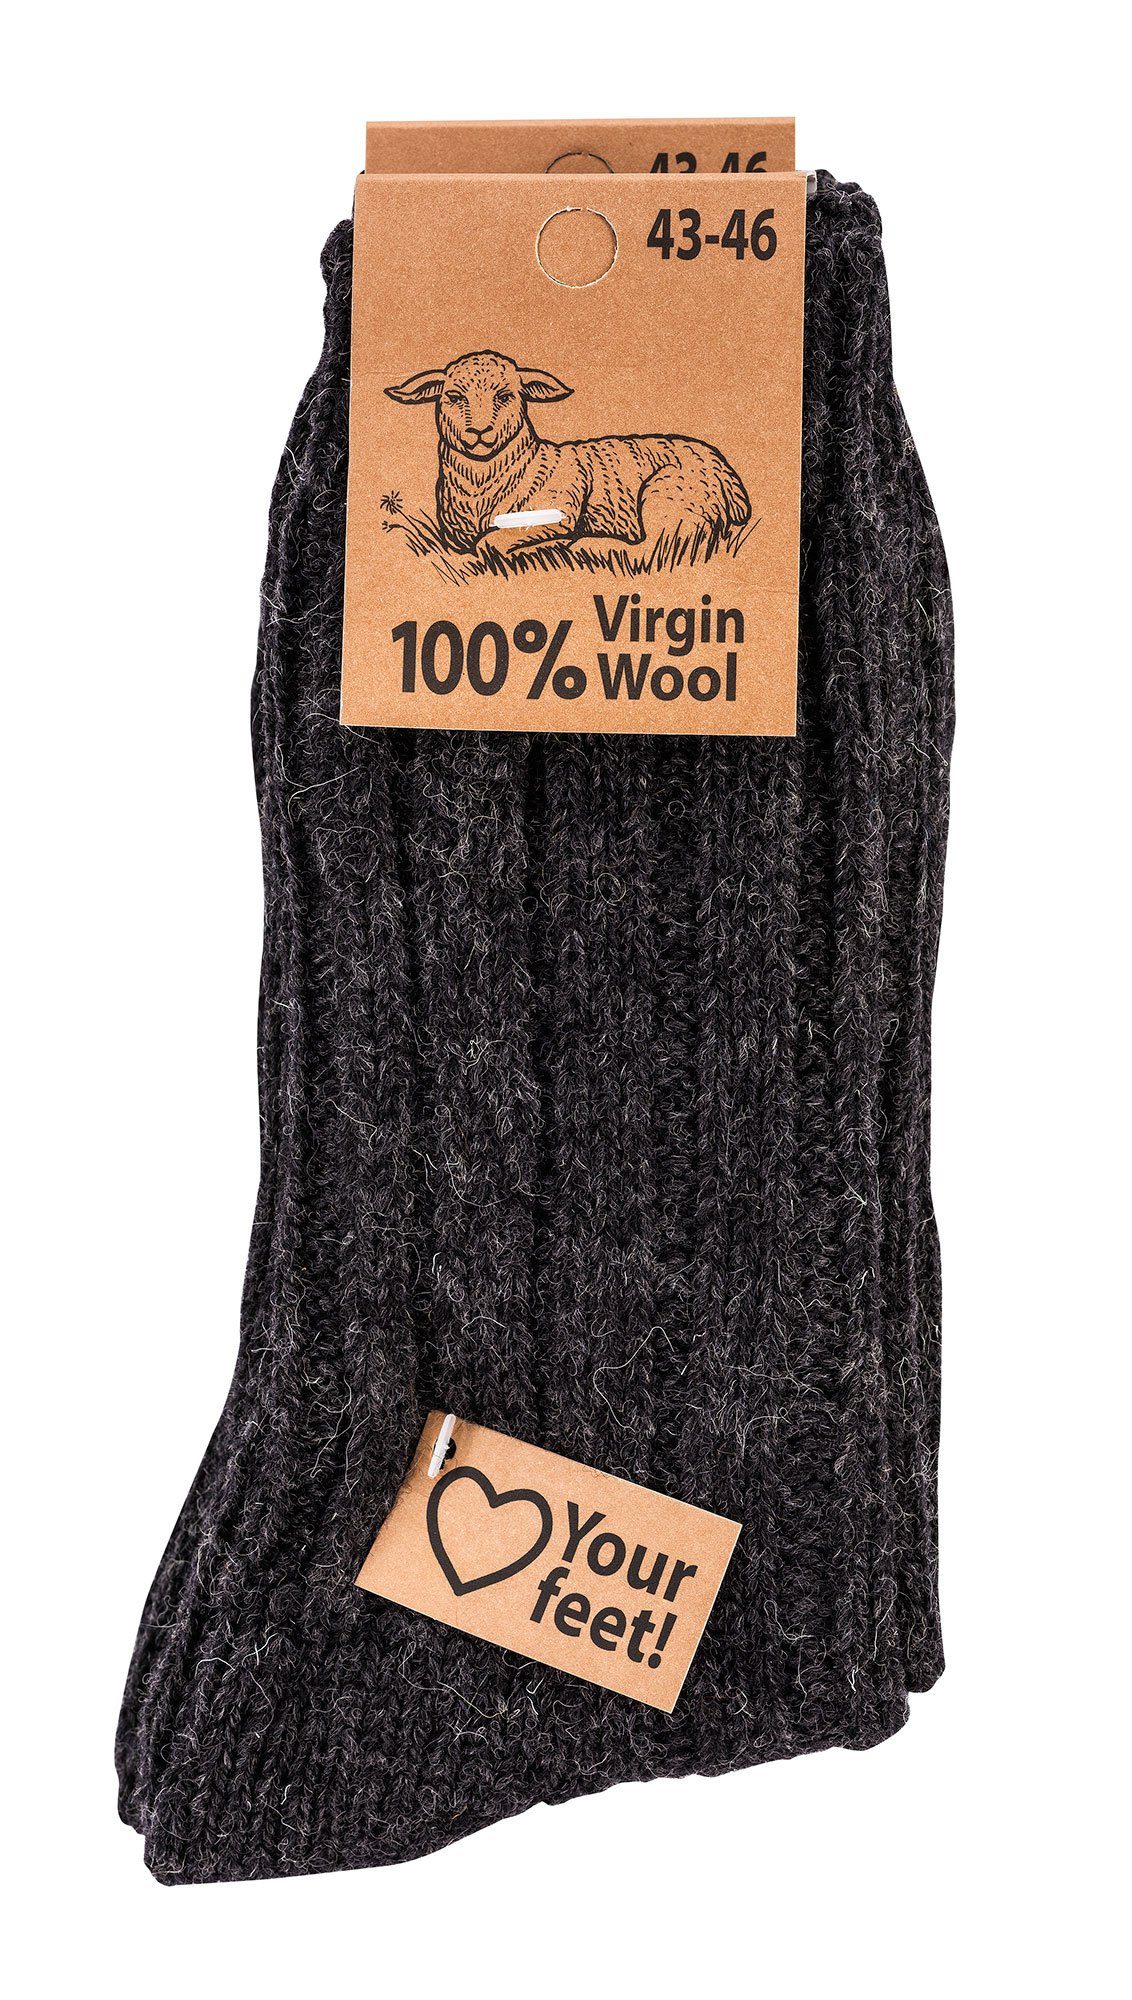 Grobstrick Fun Schafwolle anthrazit 100% Warme Paar) Socken (2 Wool" Wowerat "Virgin Wollsocken 4 Socks